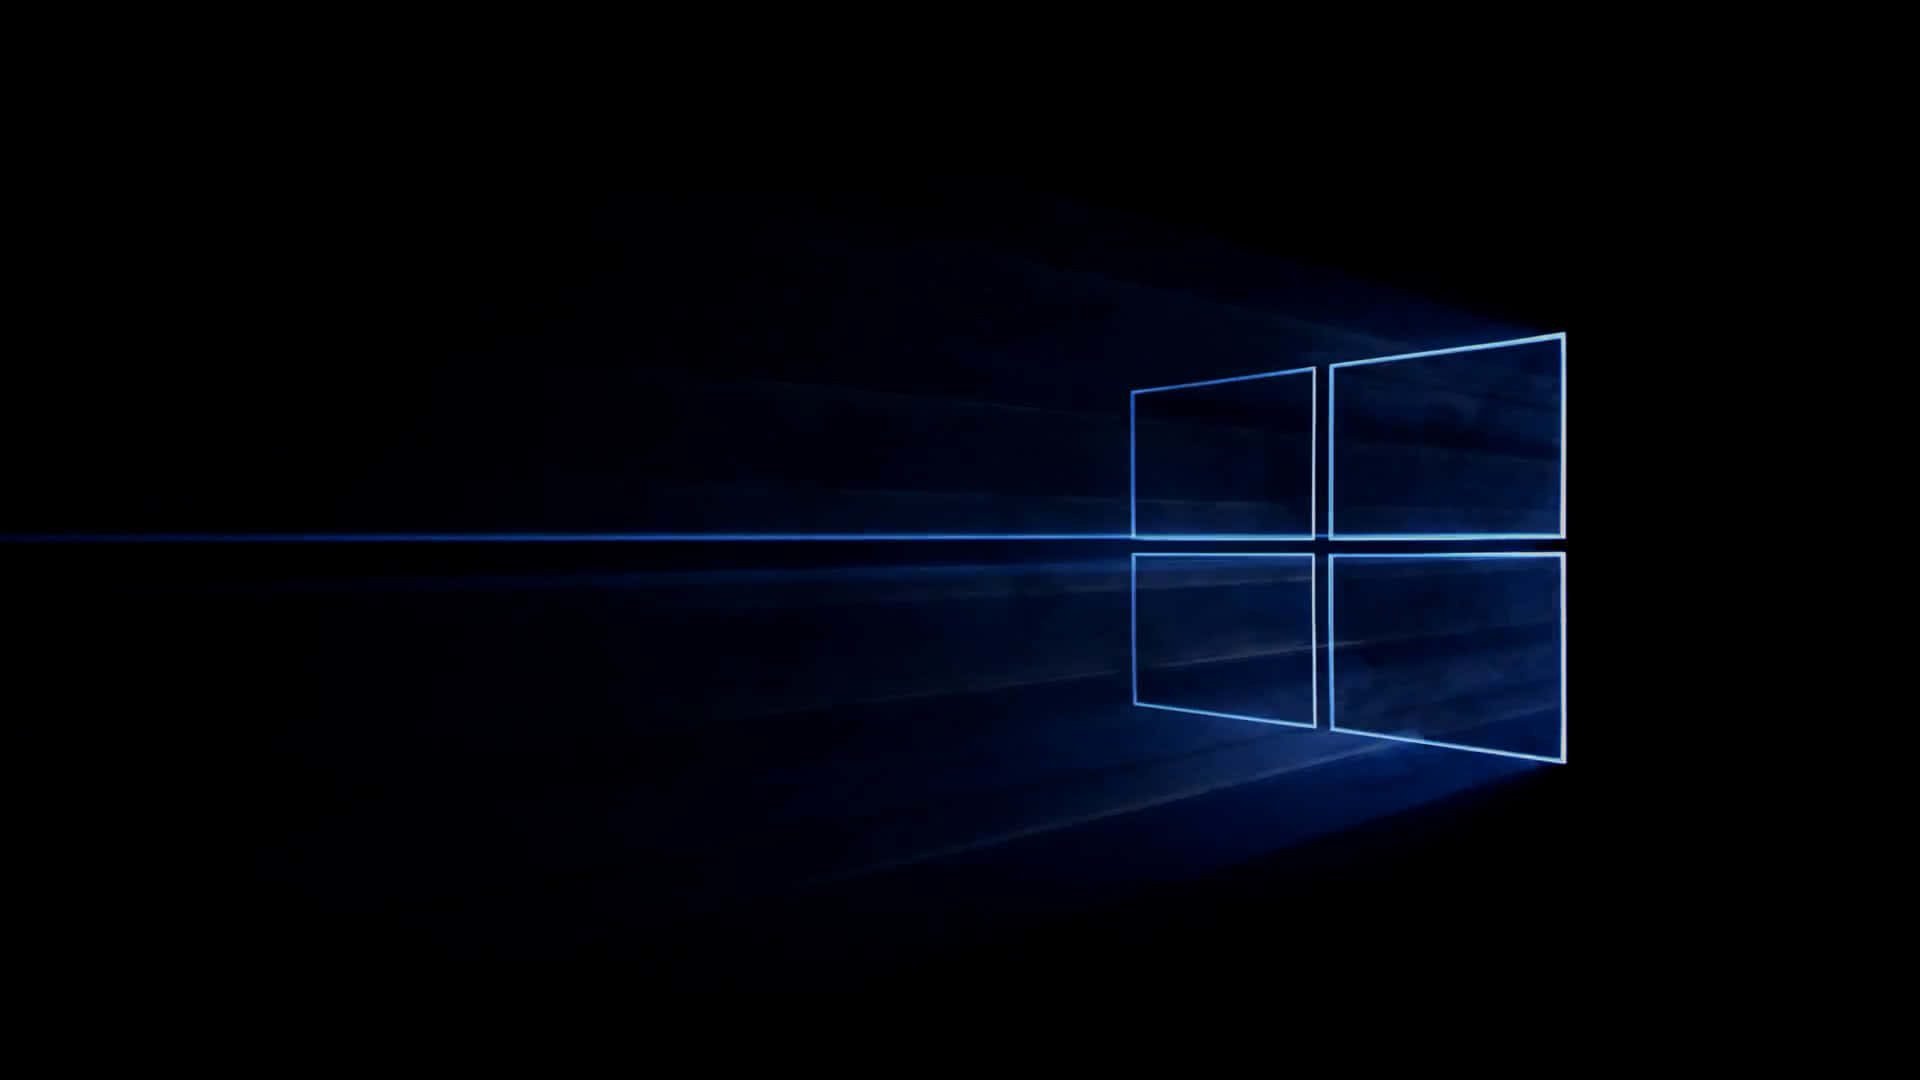 Goditiimmagini Fresche E Vibranti Sul Tuo Dispositivo Windows 10